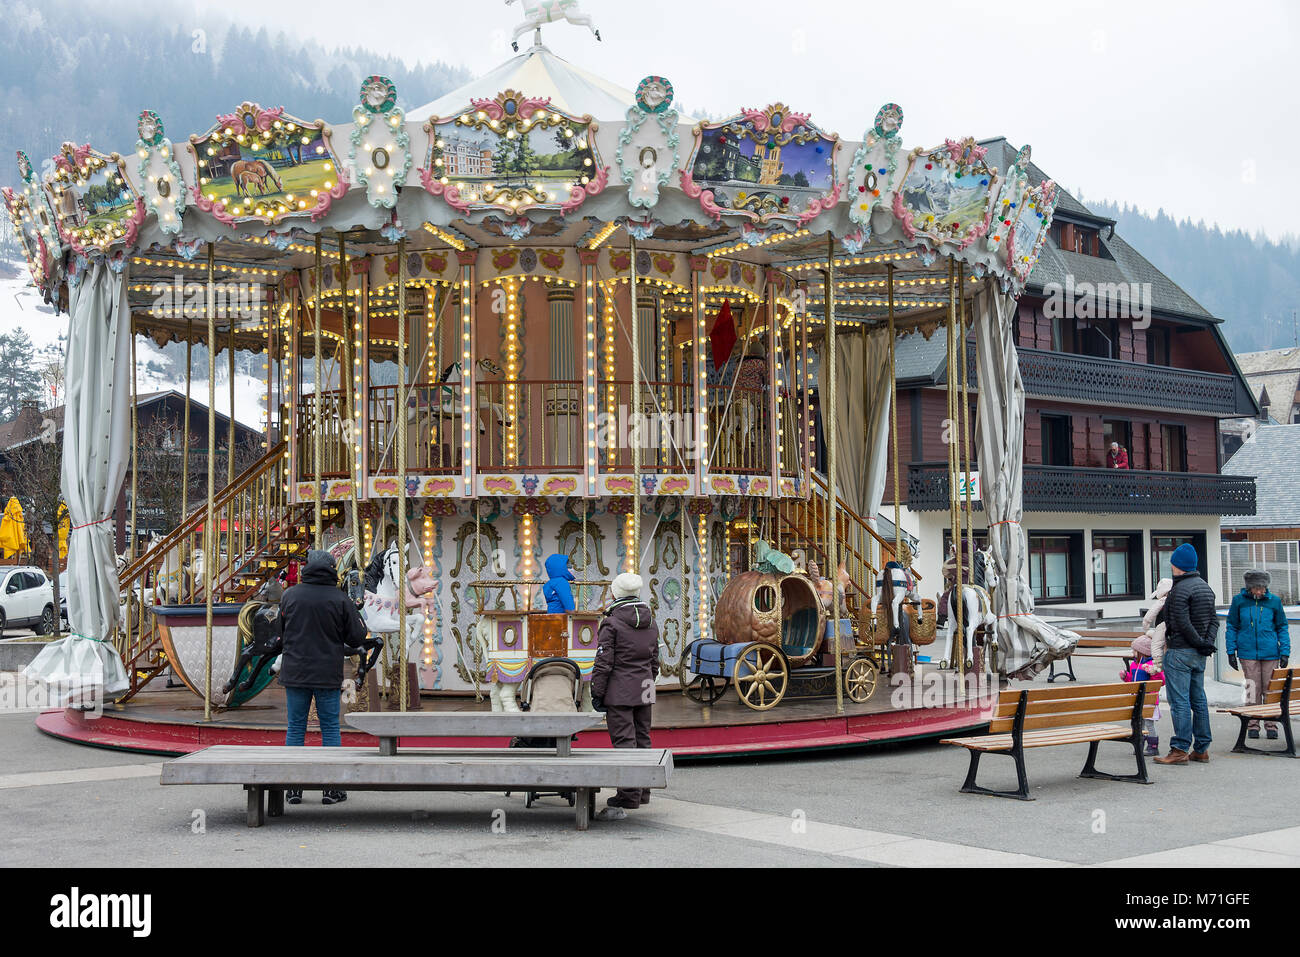 Ein Karussell oder Messe Kreisel im Marktplatz von Morzine Haute Savoie Portes du Soleil Frankreich Stockfoto